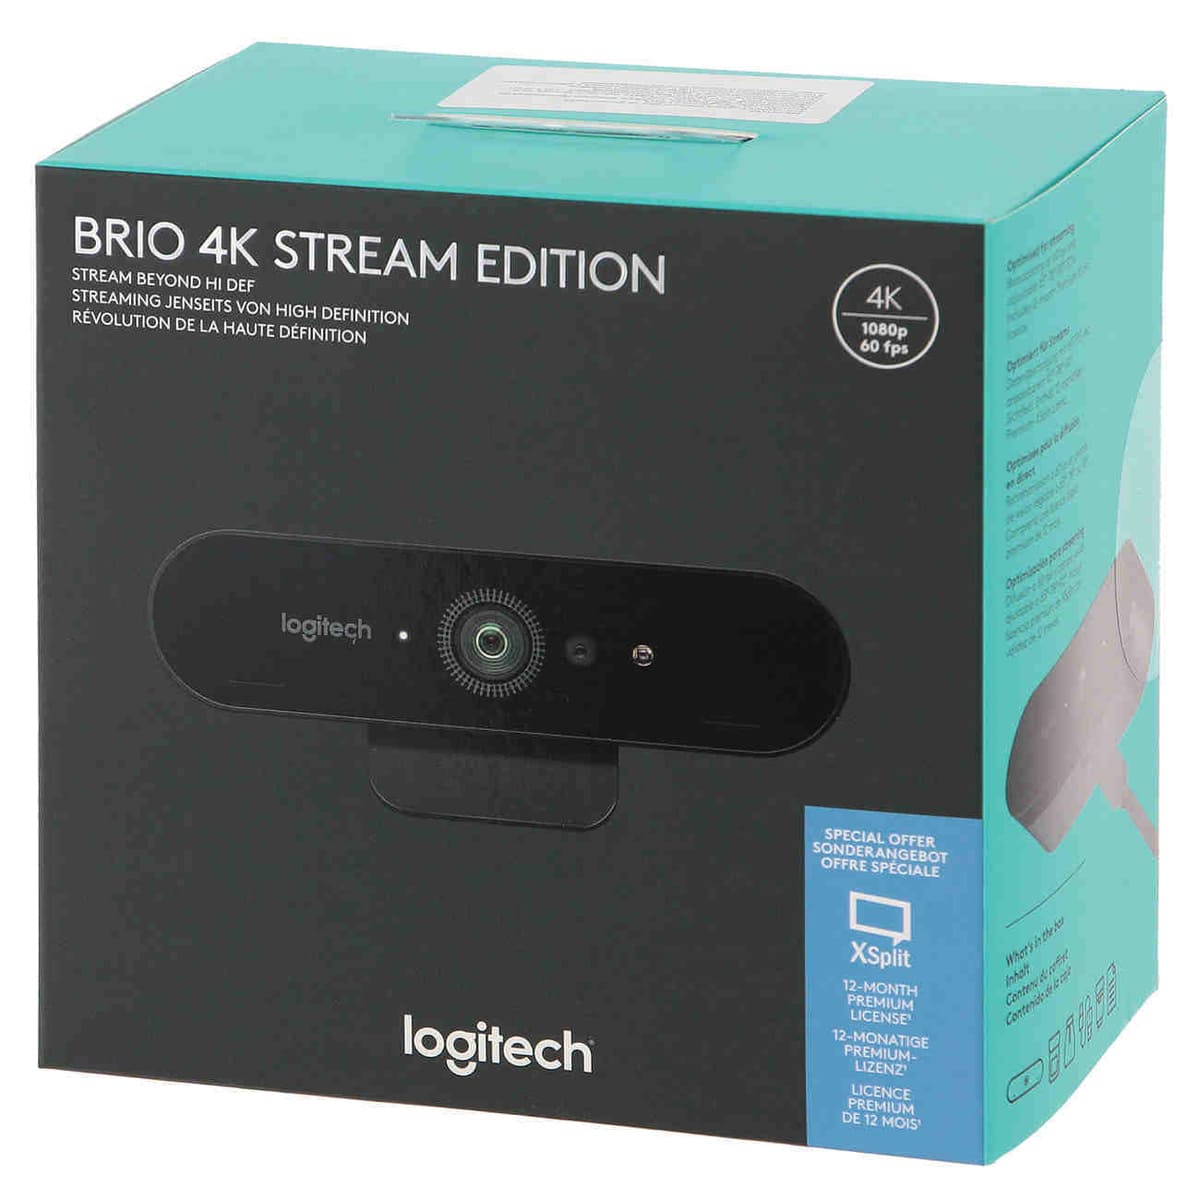 Фото — Вeб-камера Logitech Webcam BRIO 4K Stream, черный